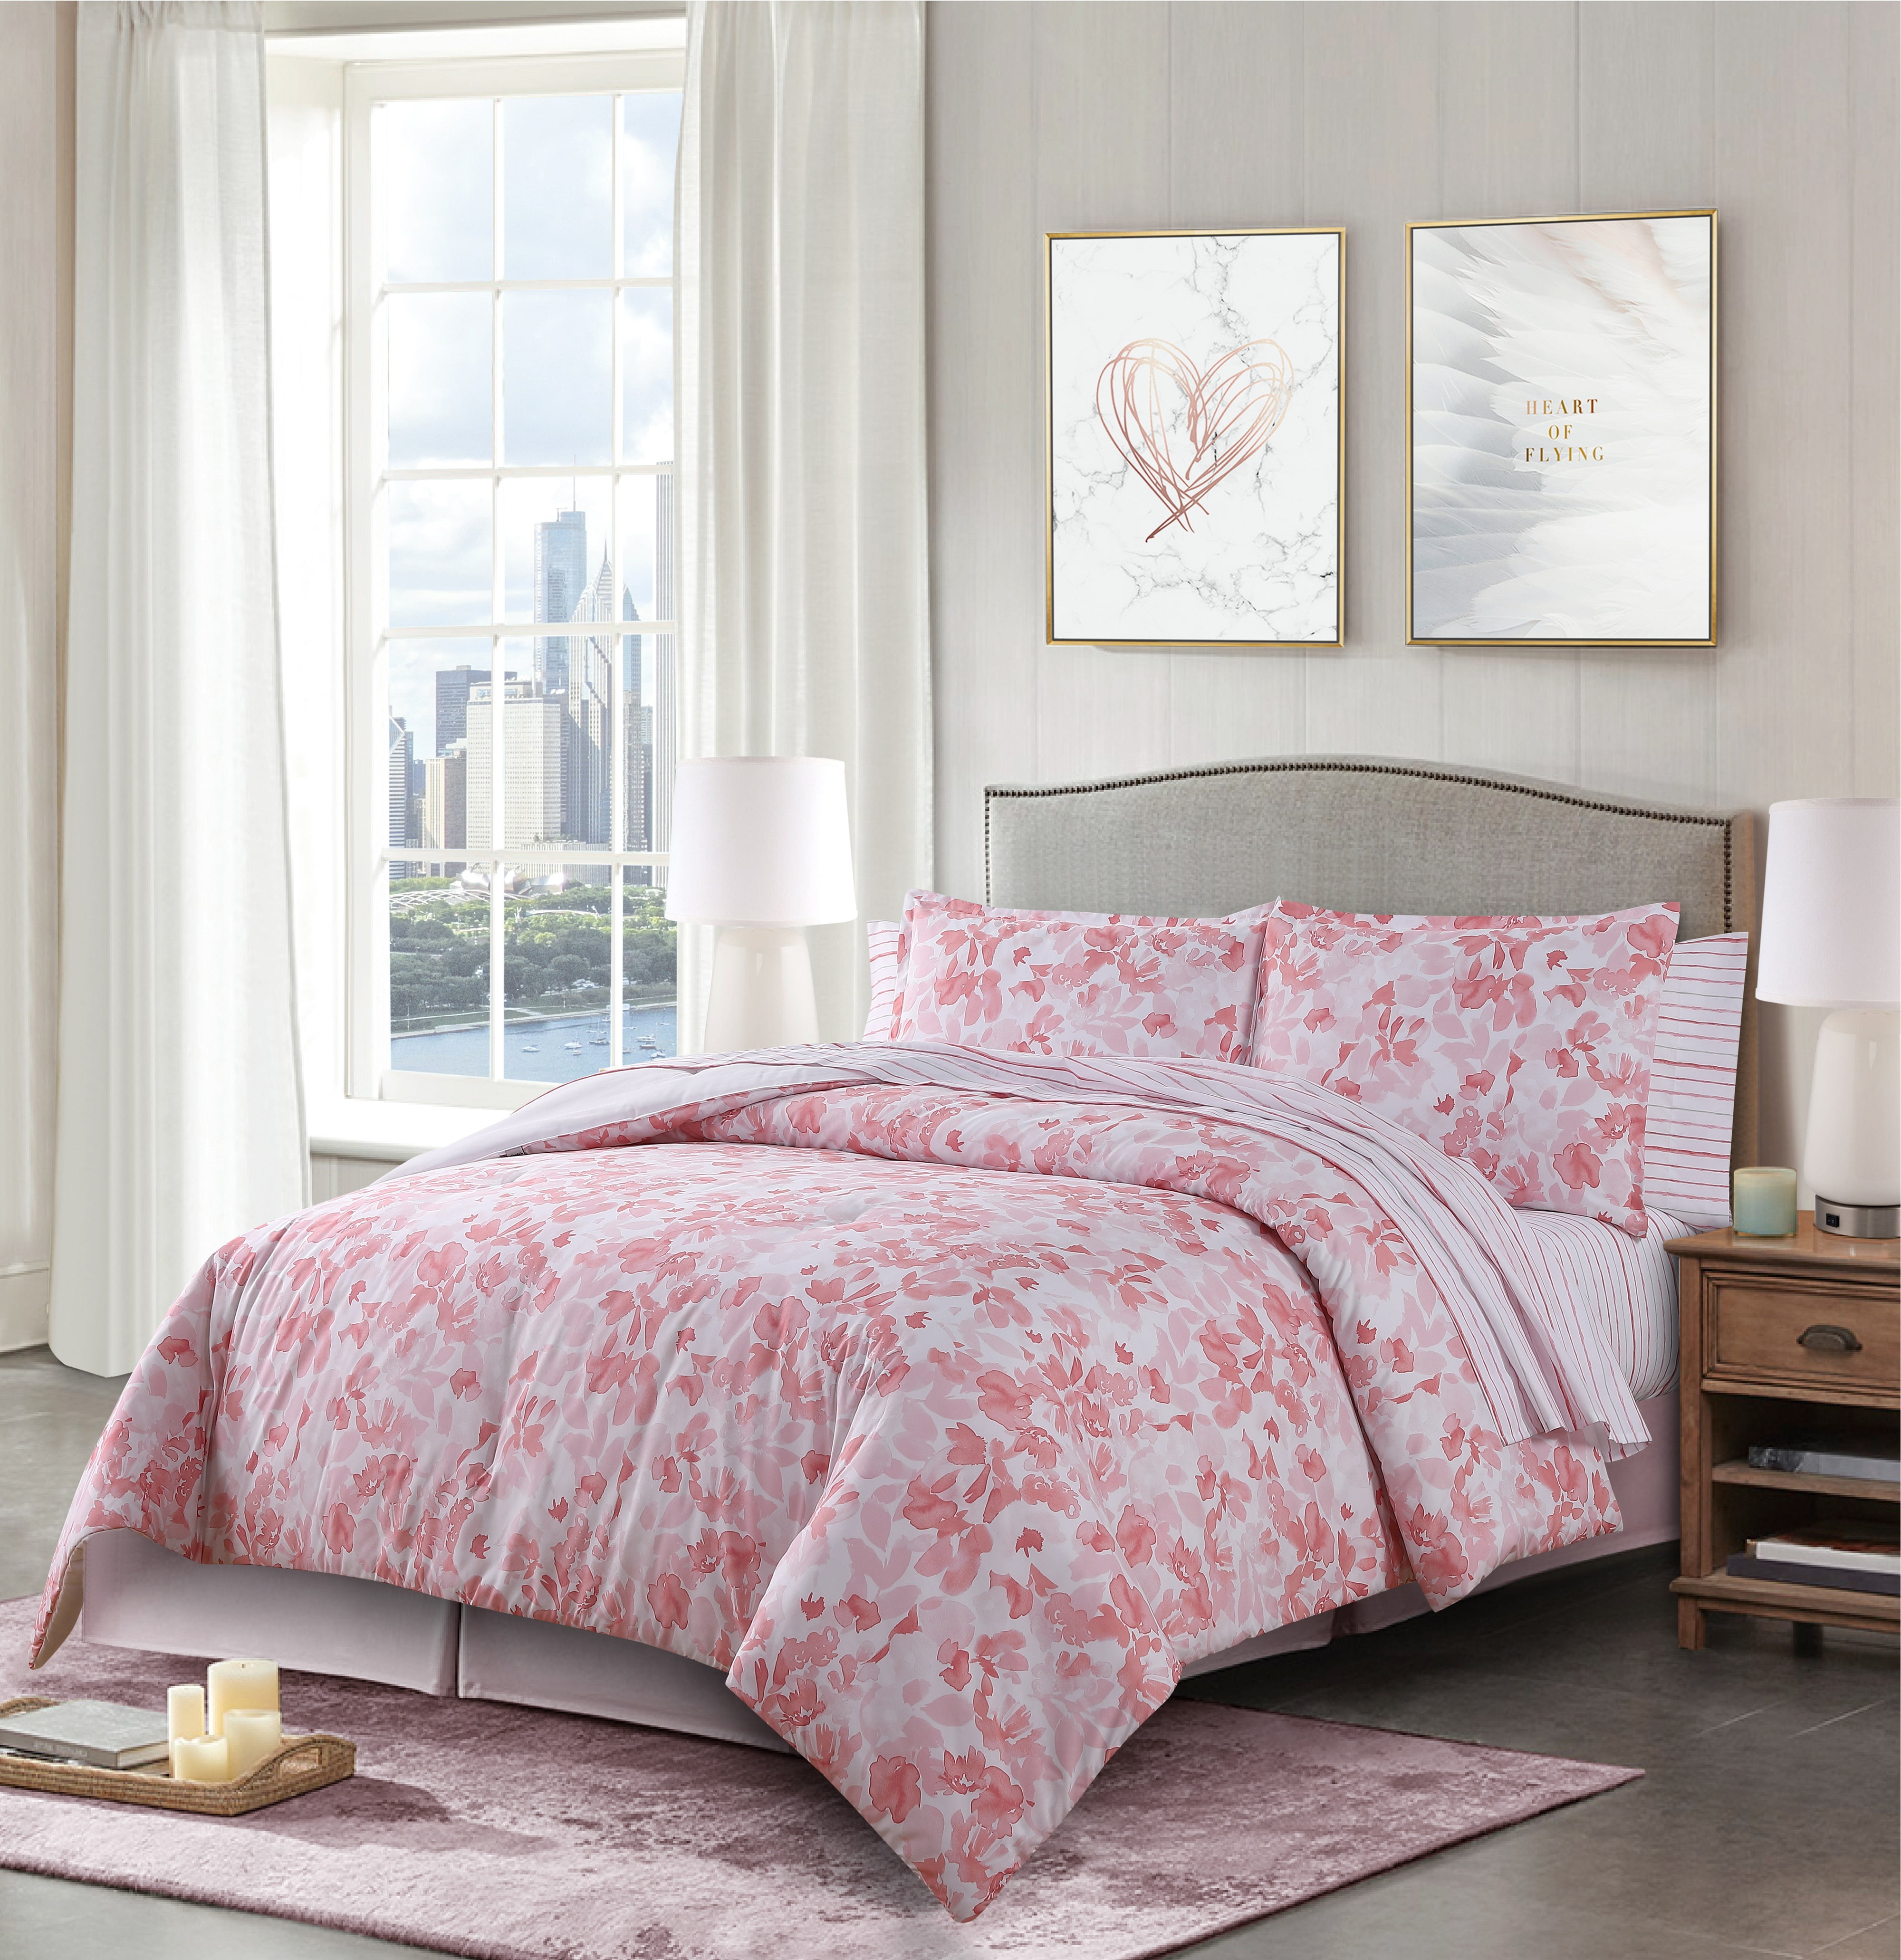 Queen Bed Sheet Set For Sweet Jojo Turquoise Pink Polka Dot Skylar Girl Bedding 